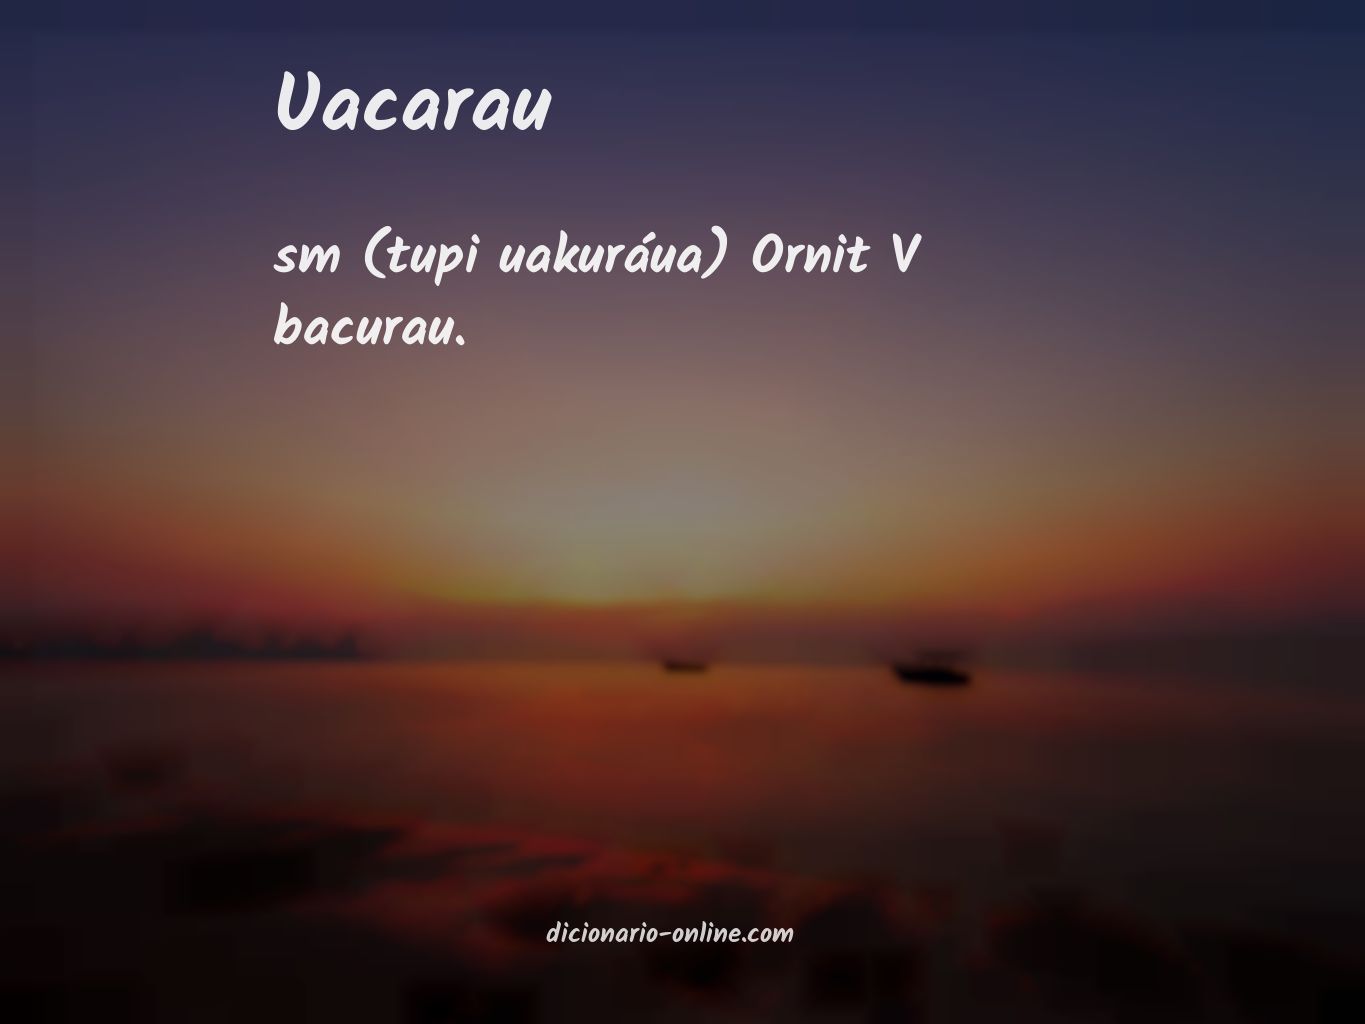 Significado de uacarau